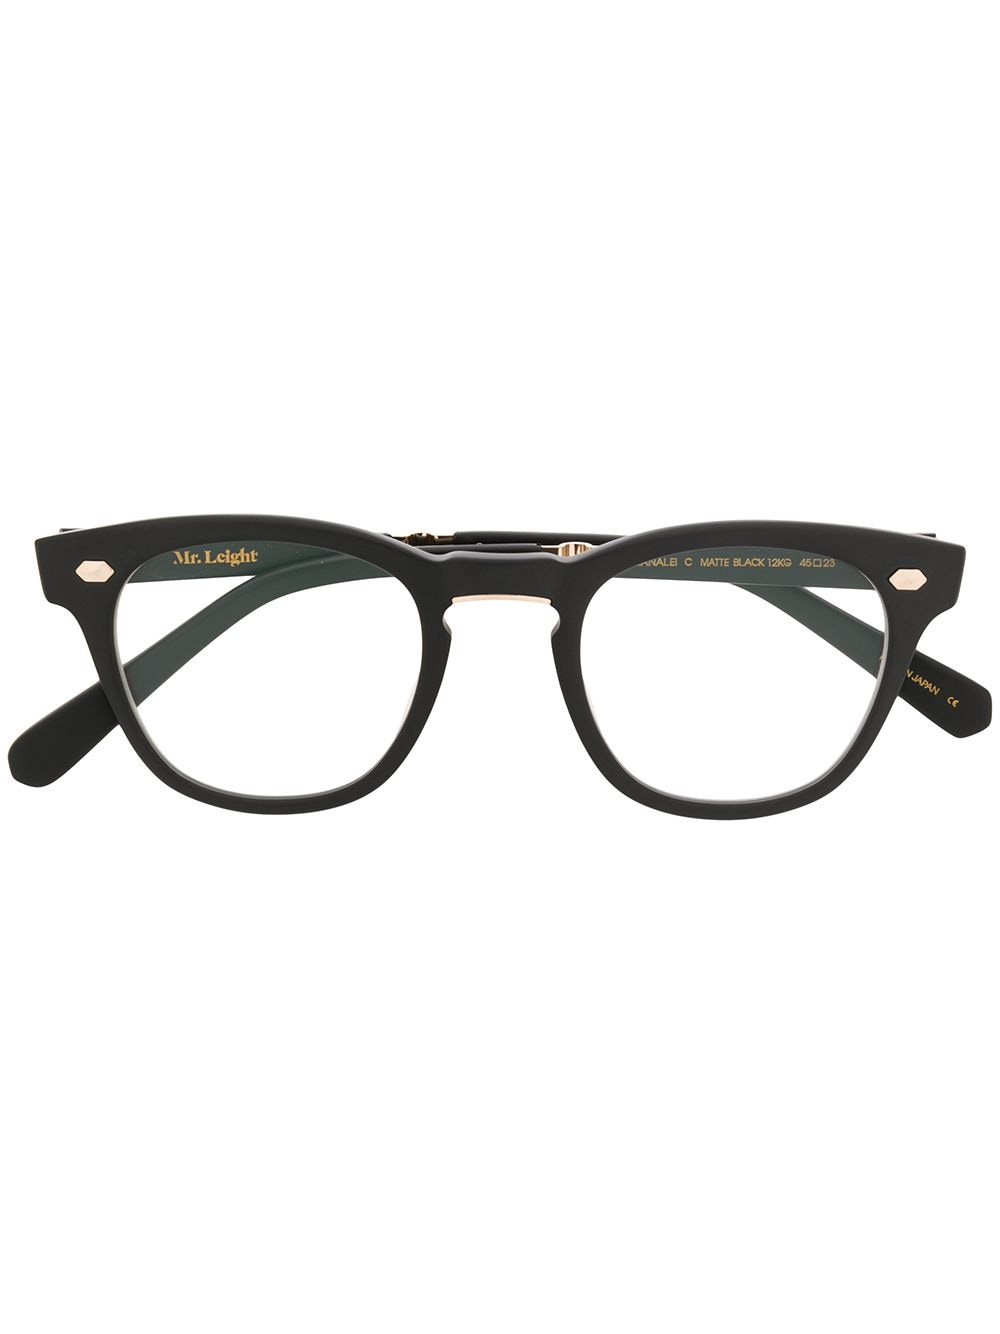 Garrett Leight chunky frame glasses